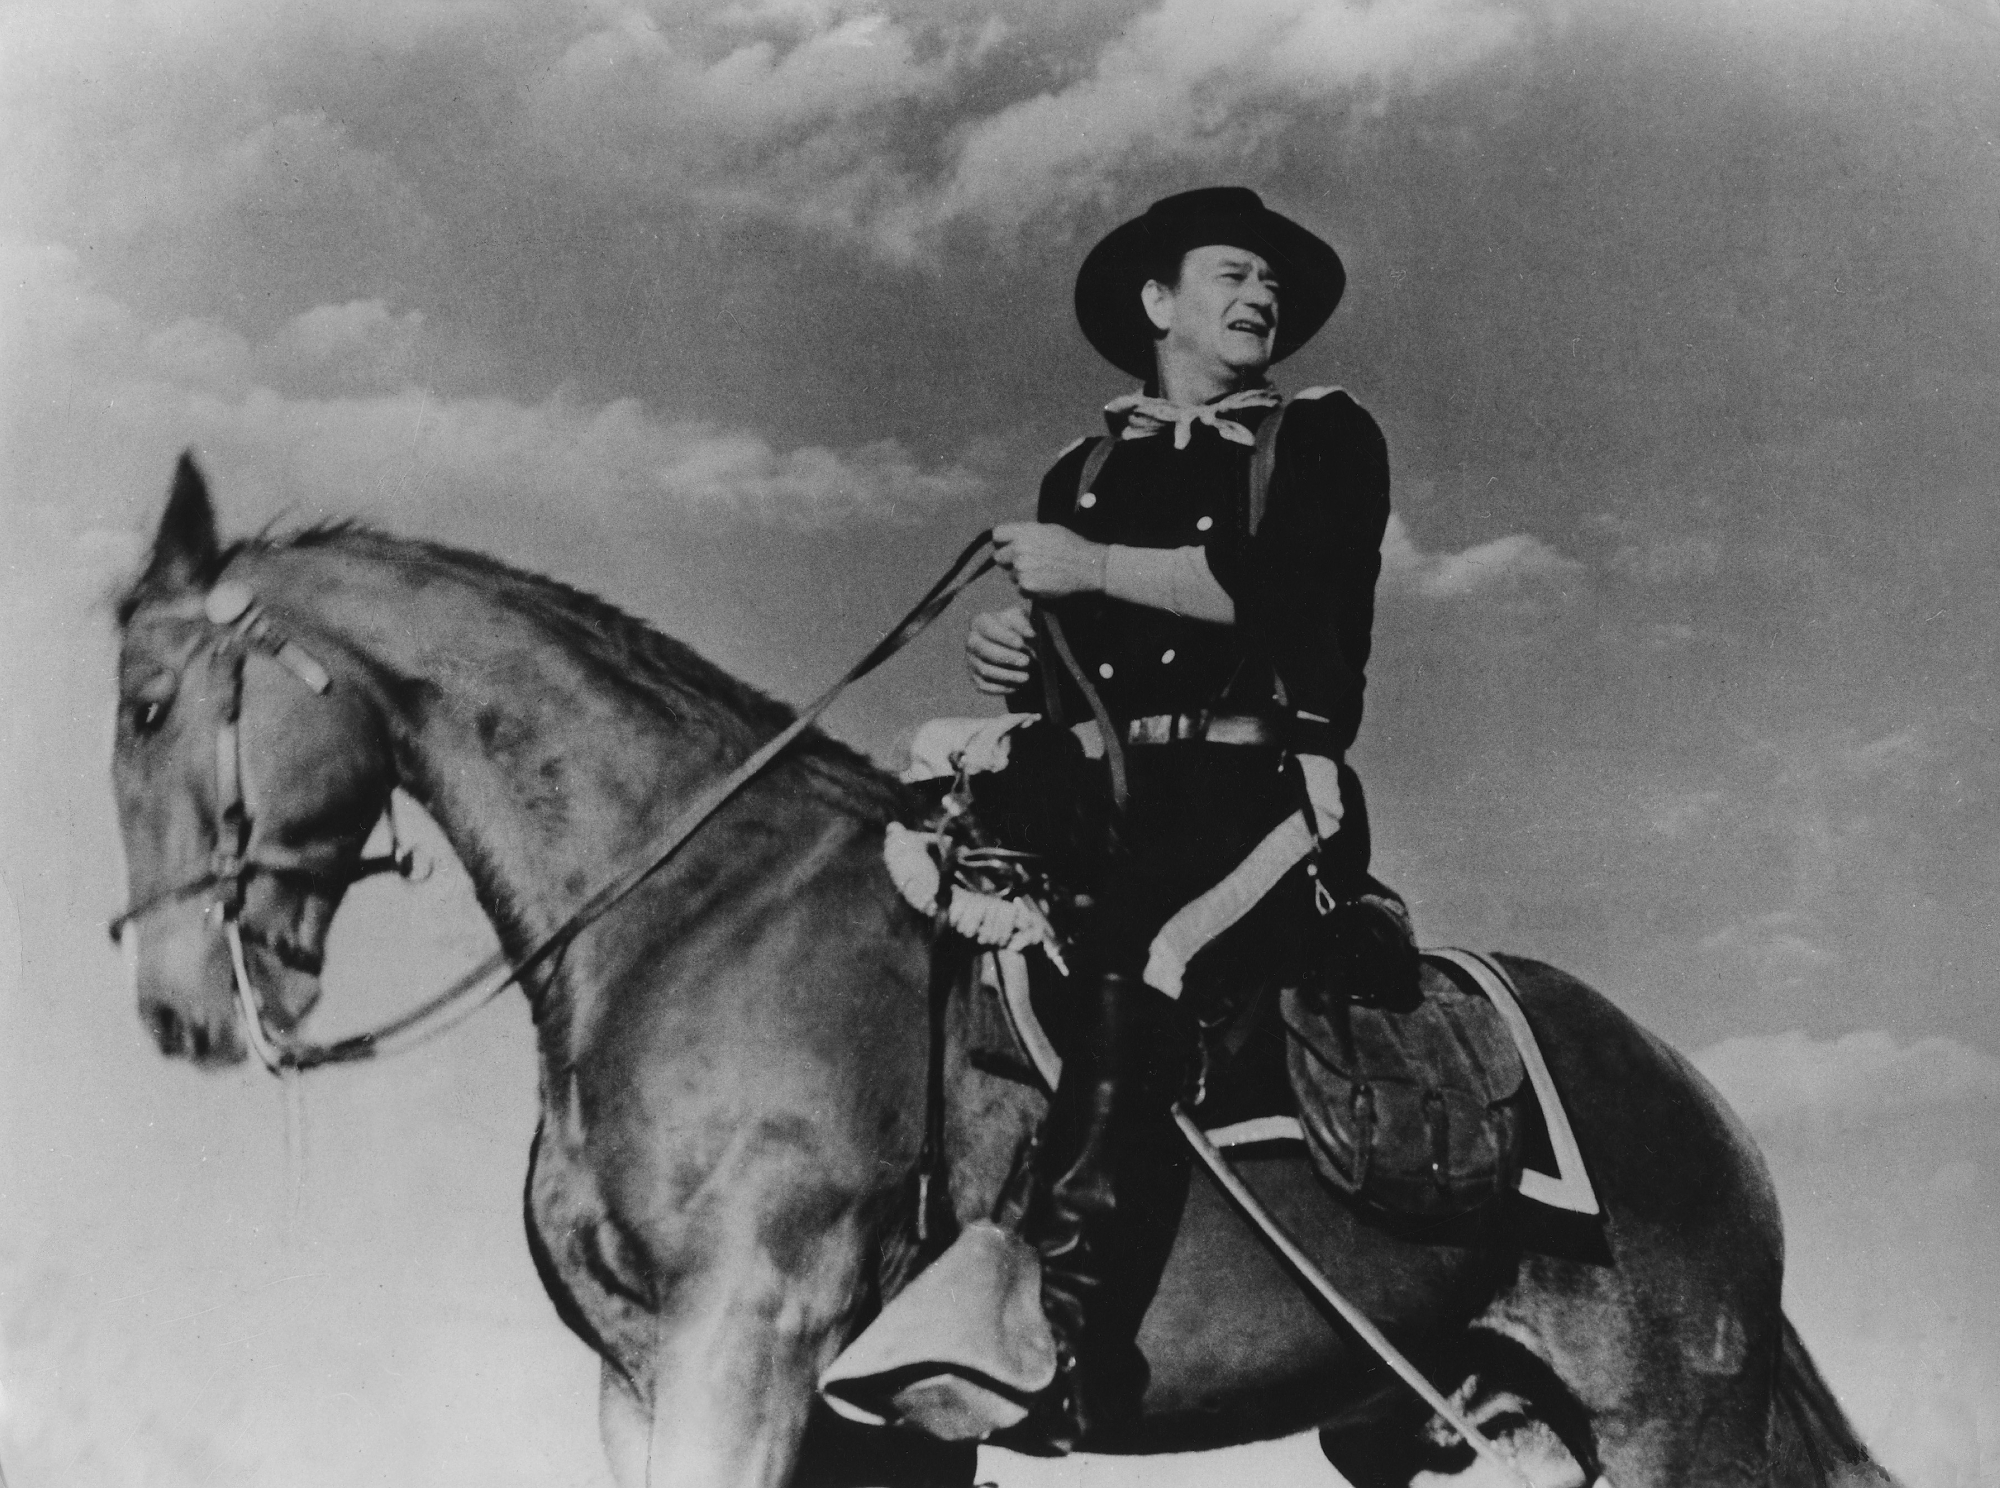 John Wayne in his performance as Col. John Marlowe on horseback looking over his shoulder